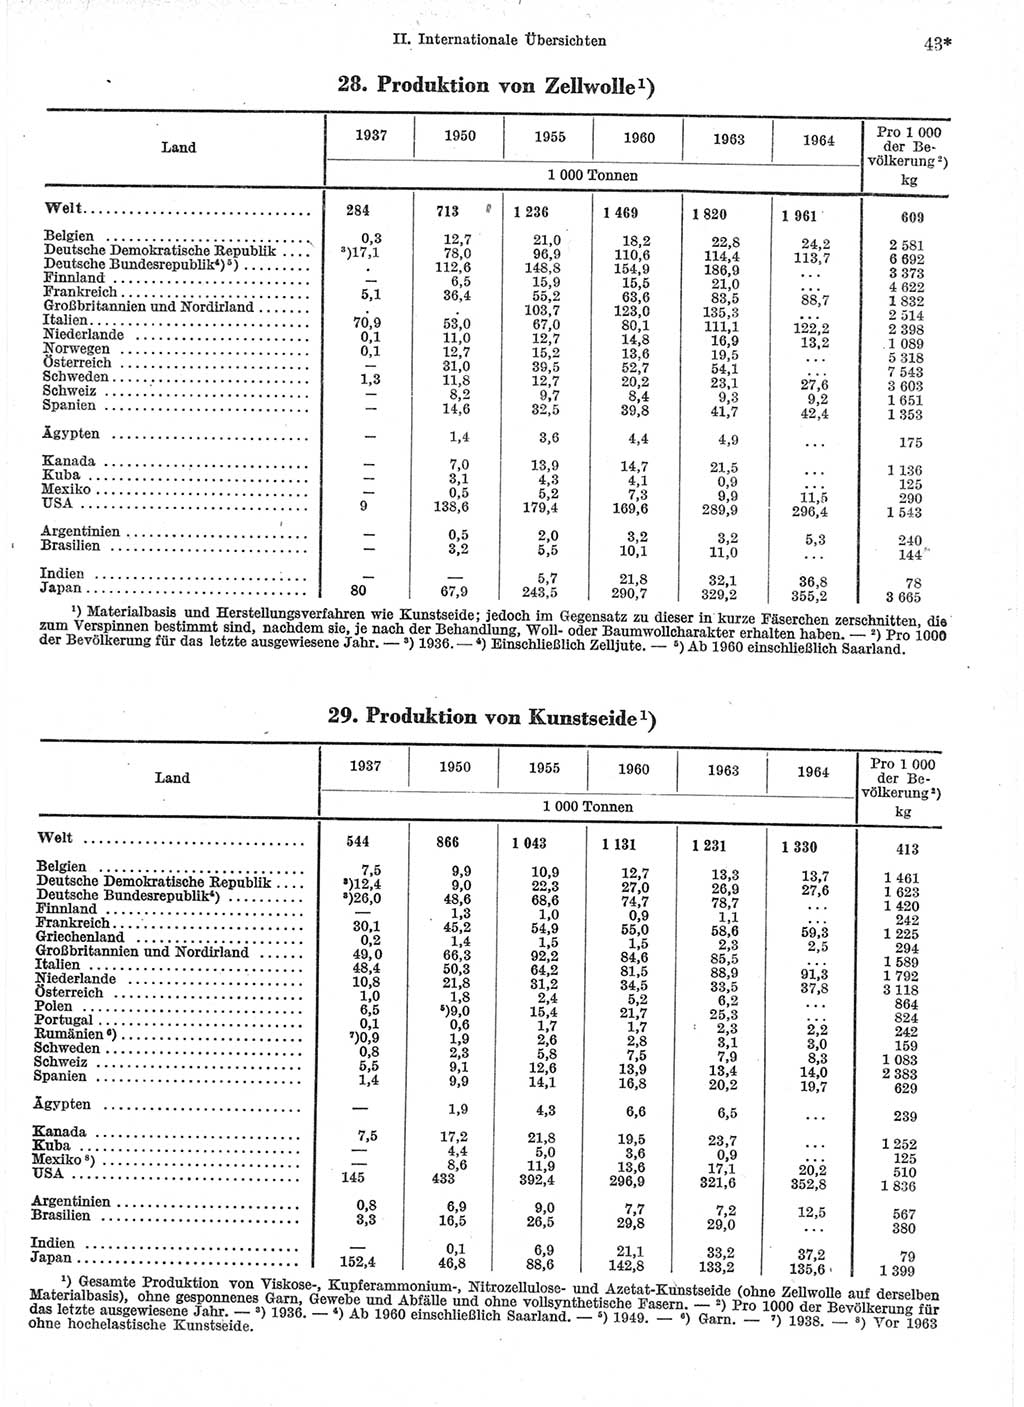 Statistisches Jahrbuch der Deutschen Demokratischen Republik (DDR) 1966, Seite 43 (Stat. Jb. DDR 1966, S. 43)